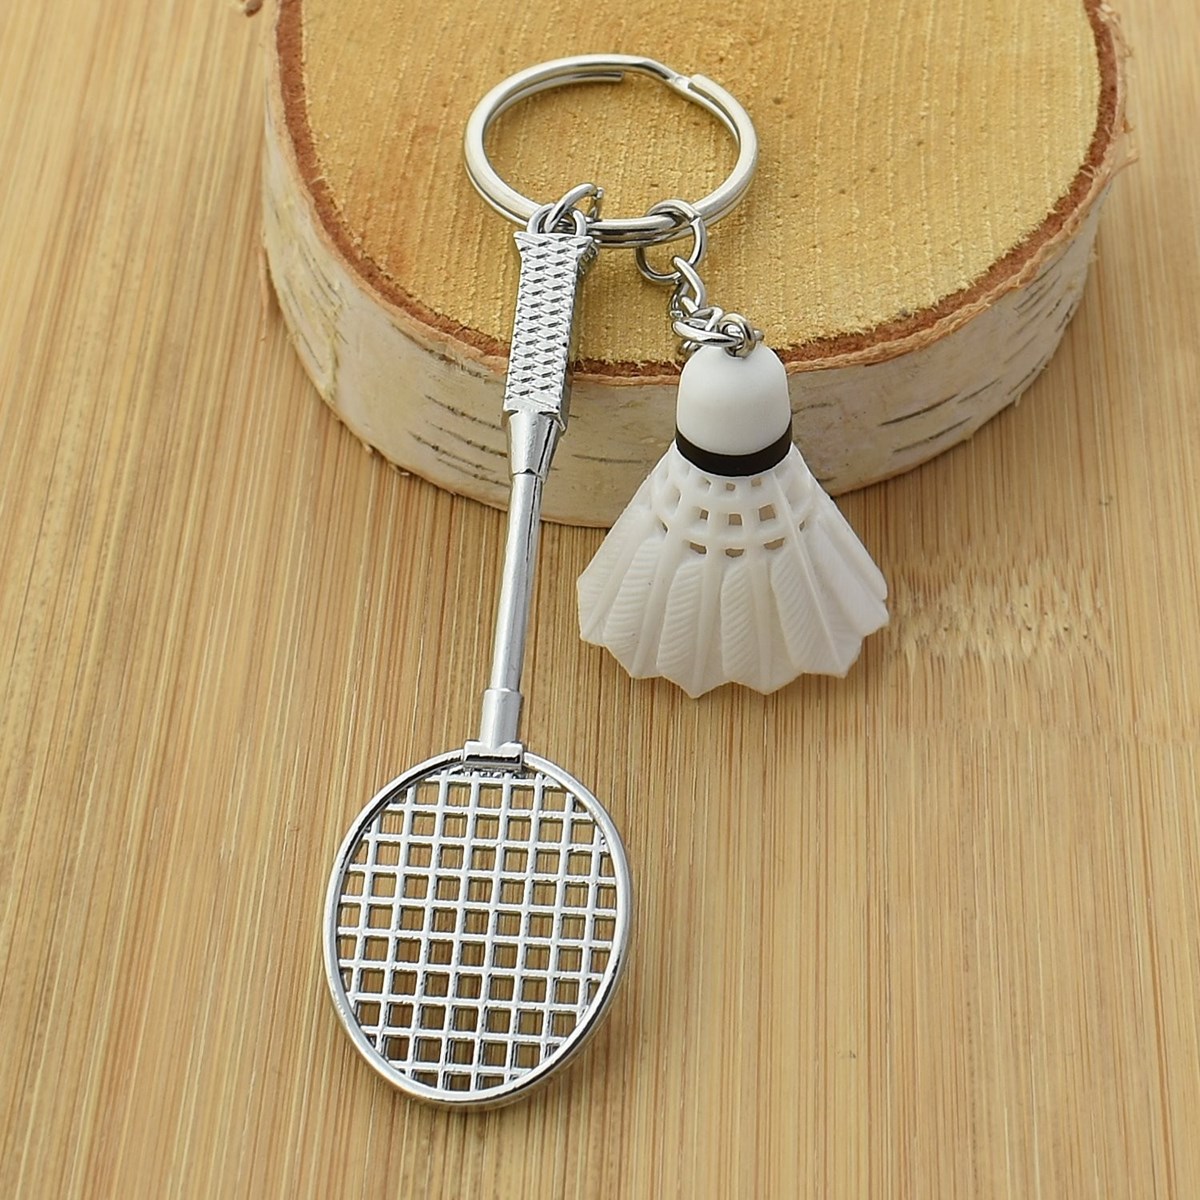 Porte-clés sport badminton raquette et voilant argenté - vue 3